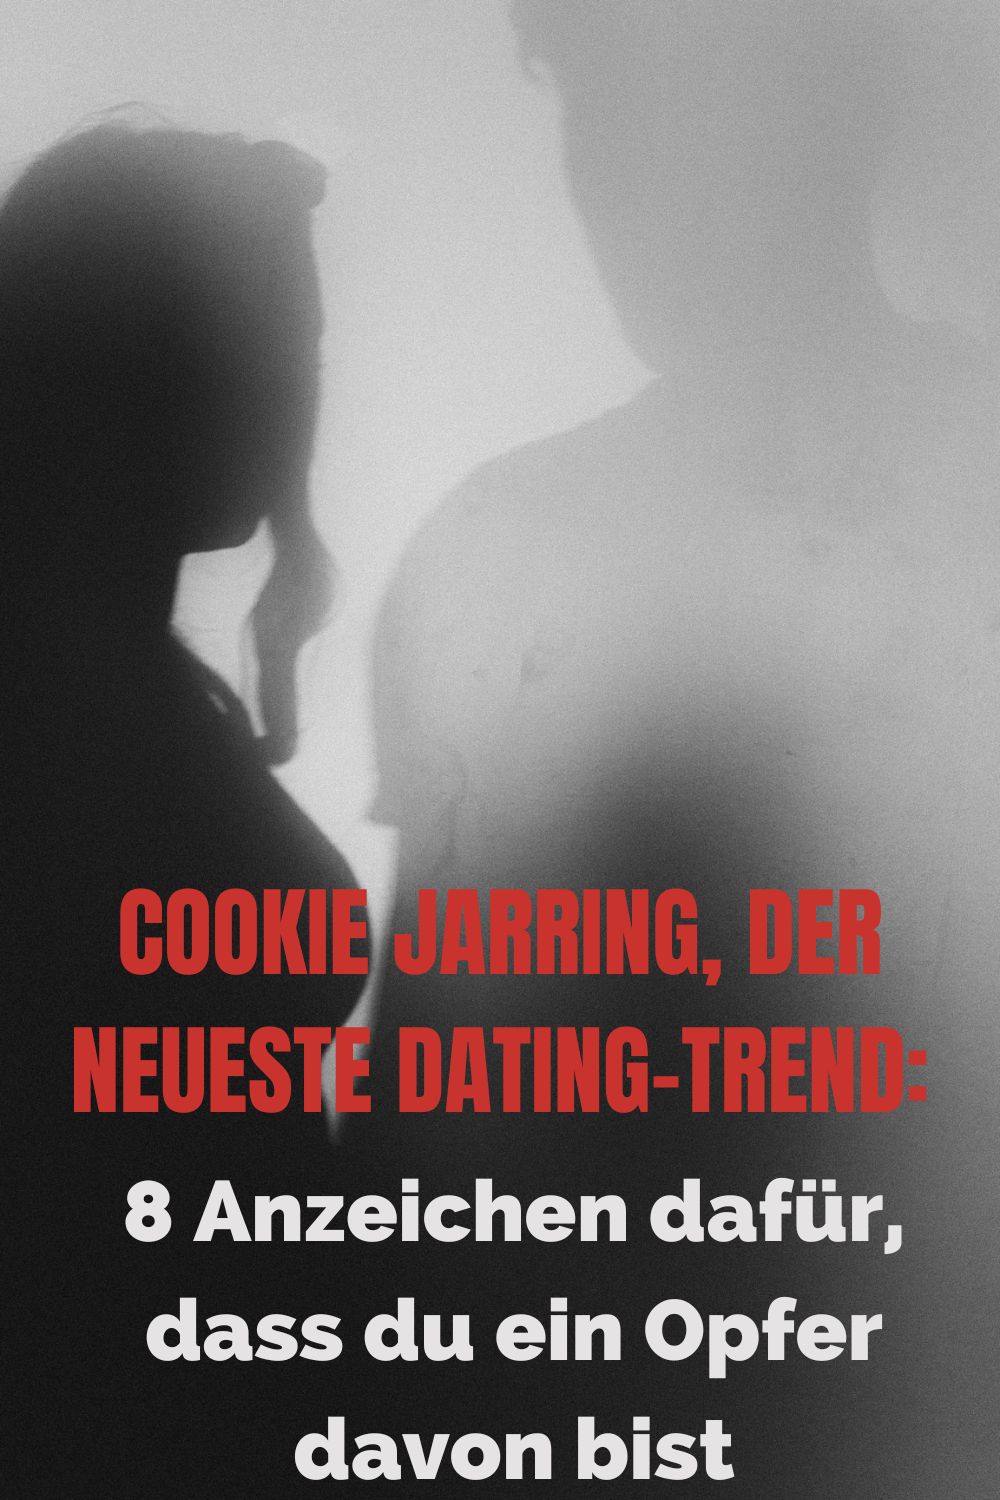 Cookie-Jarring-der-neueste-Dating-Trend-8-Anzeichen-dafuer-dass-du-ein-Opfer-davon-bist